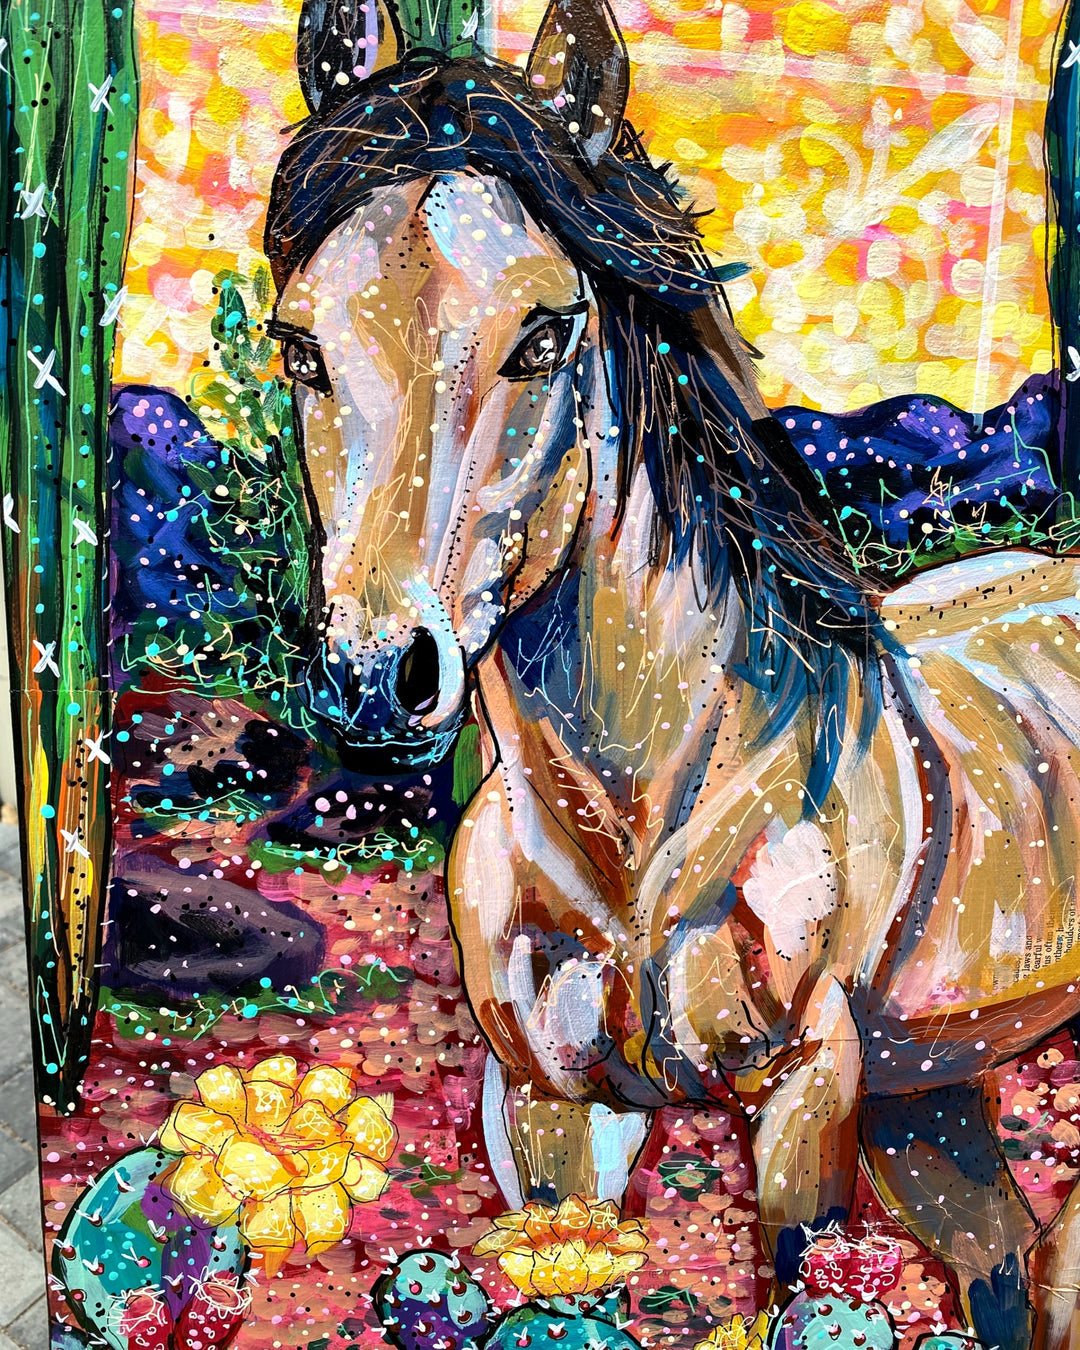 Southwestern Tile & Wild Horses - Heather Freitas 